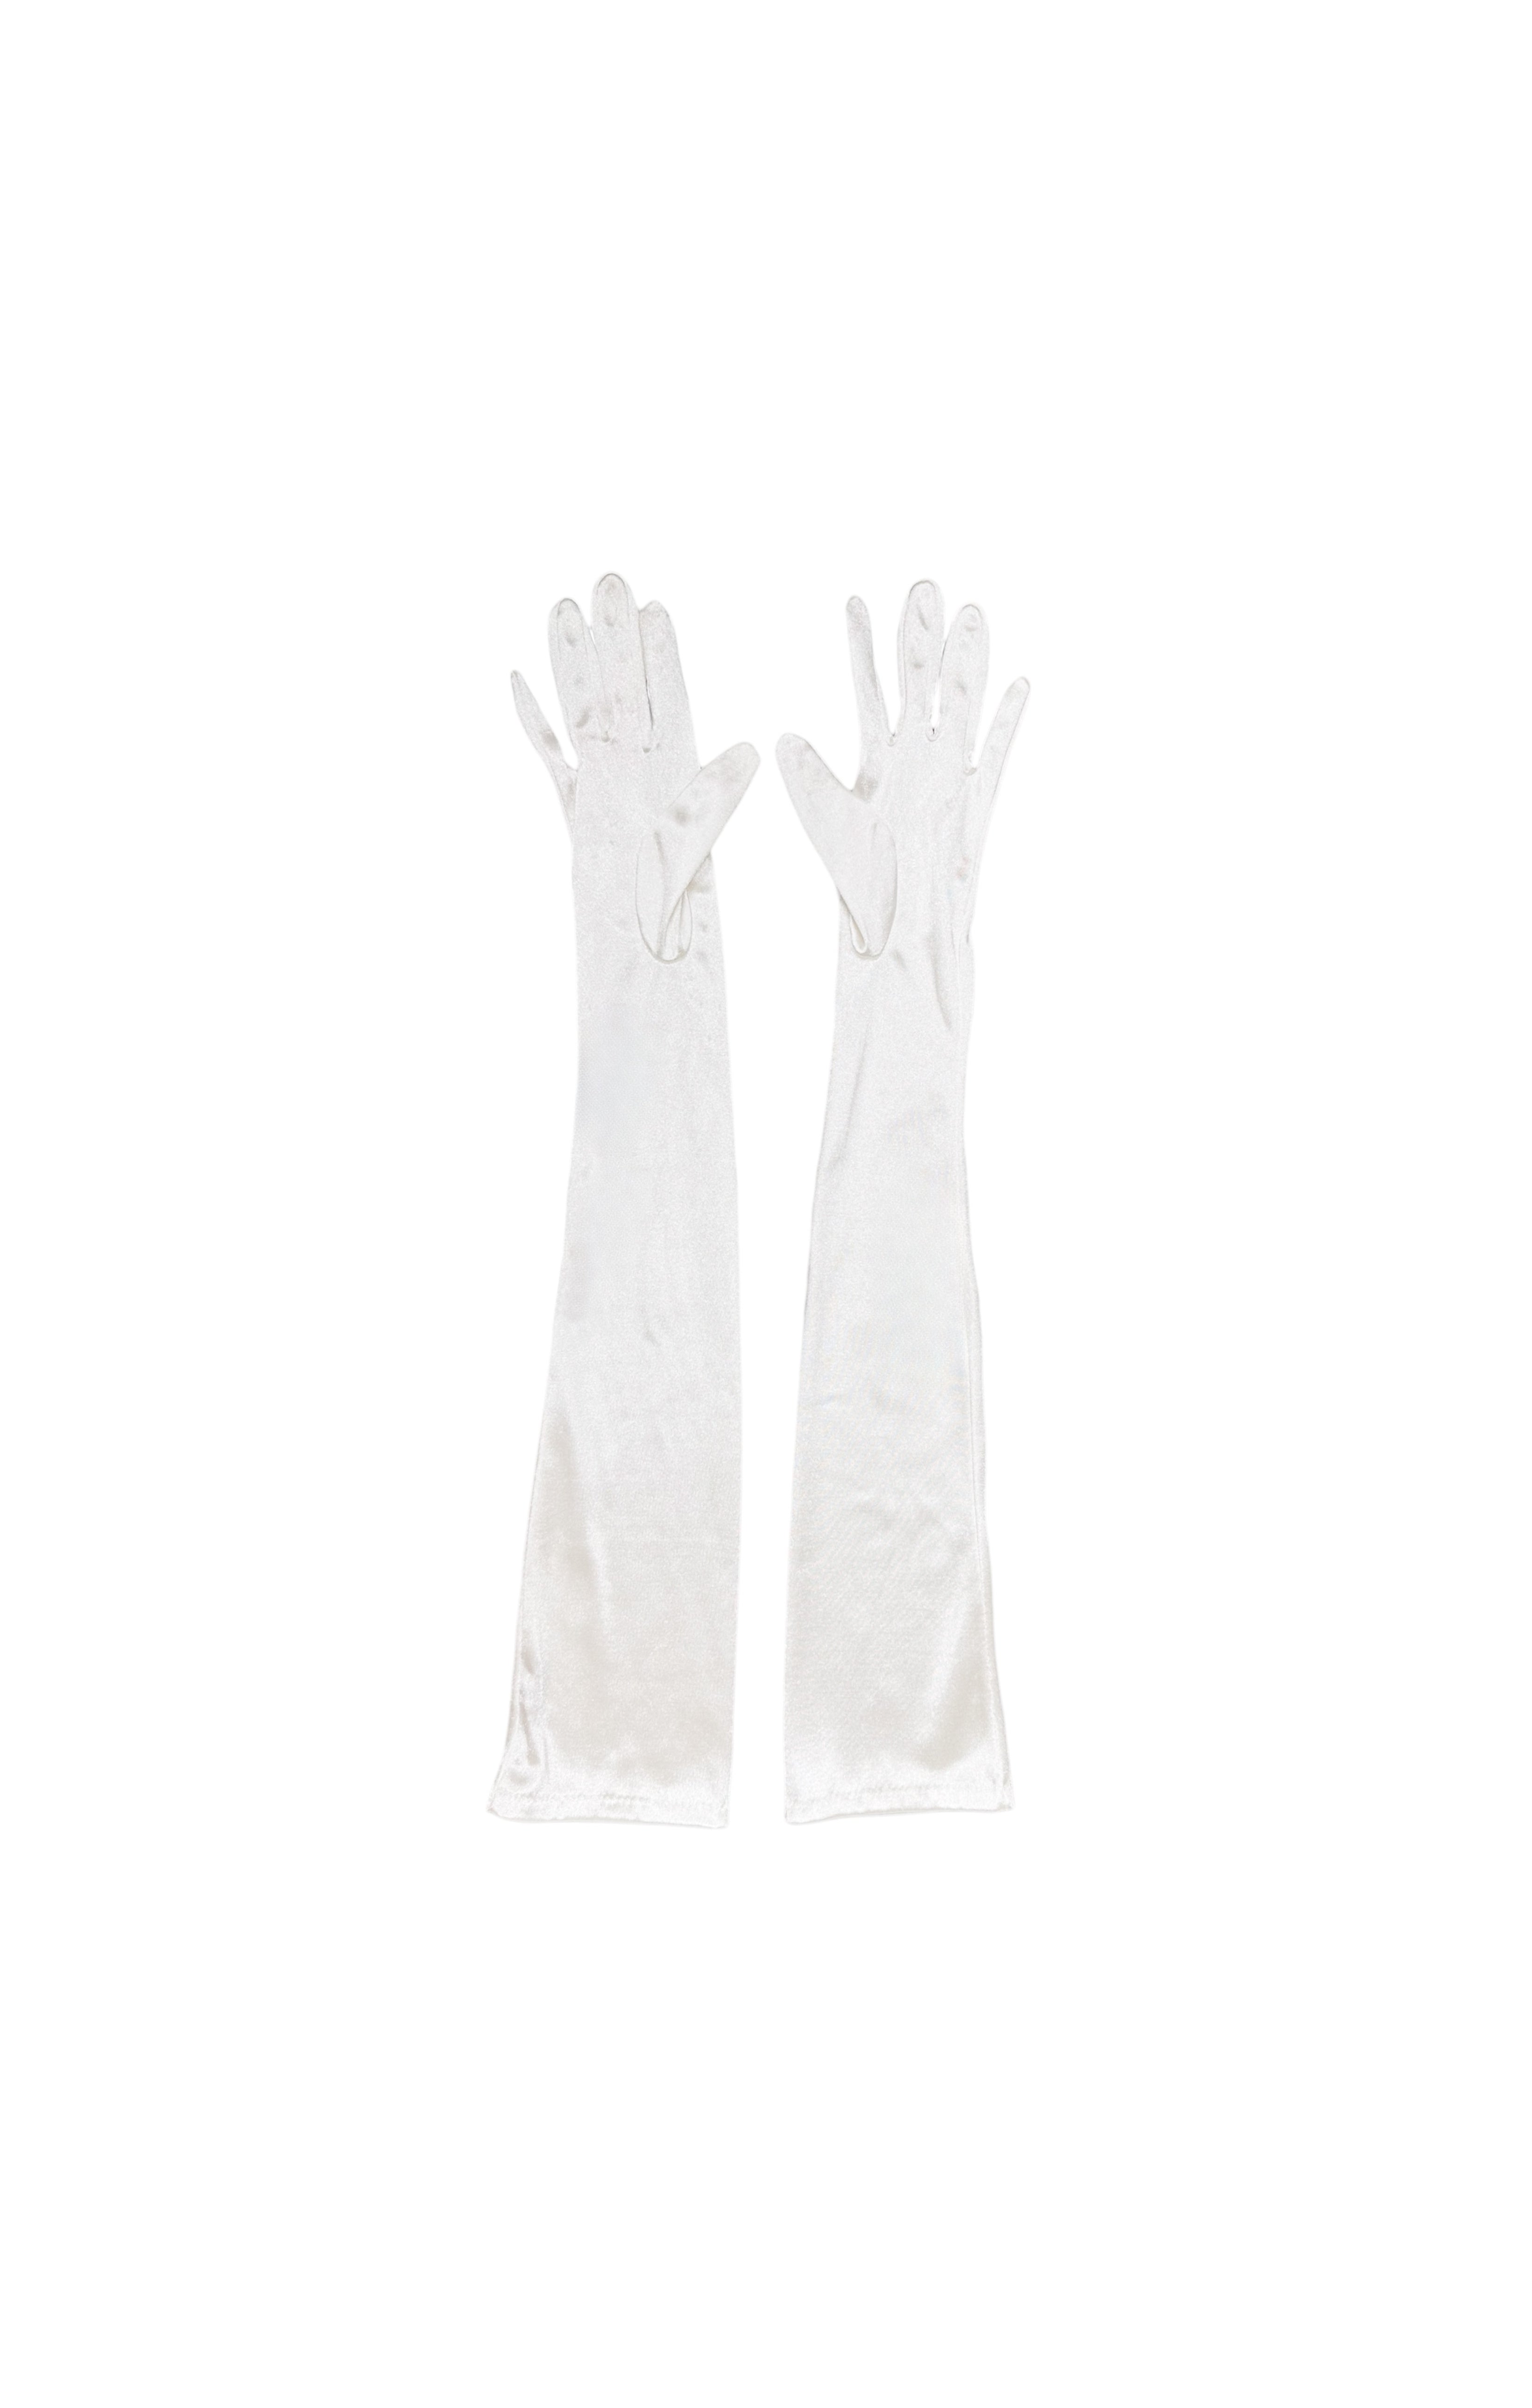 MONIQUE LHUILLIER COLLECTION (RARE) Dress & Gloves Set Size: Dress - US 8 Gloves - OSFM